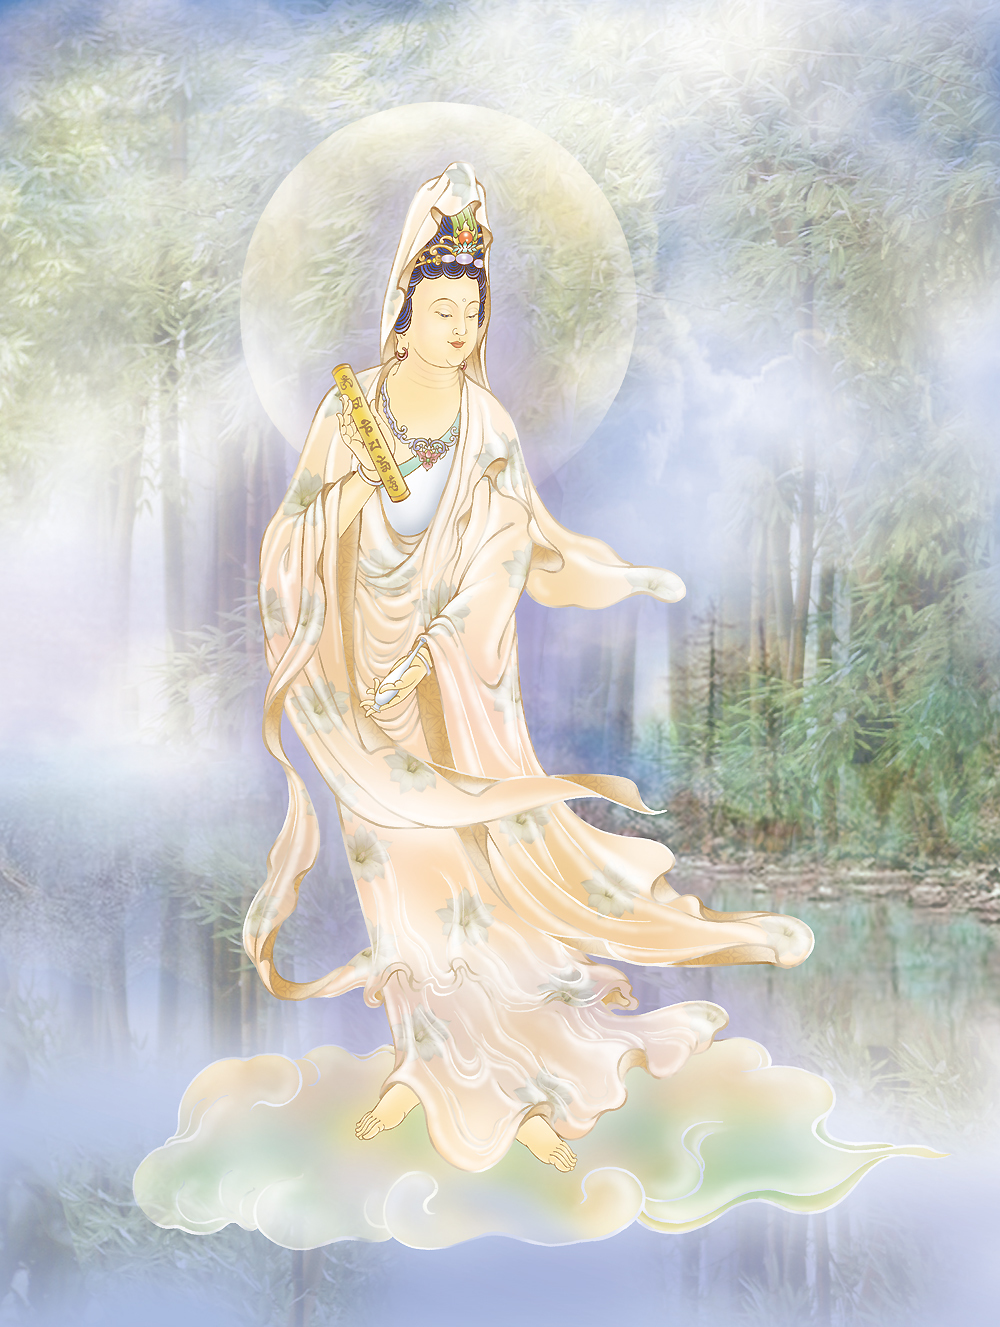 佛教中最全观音菩萨，永保平安，值得收藏欣赏！